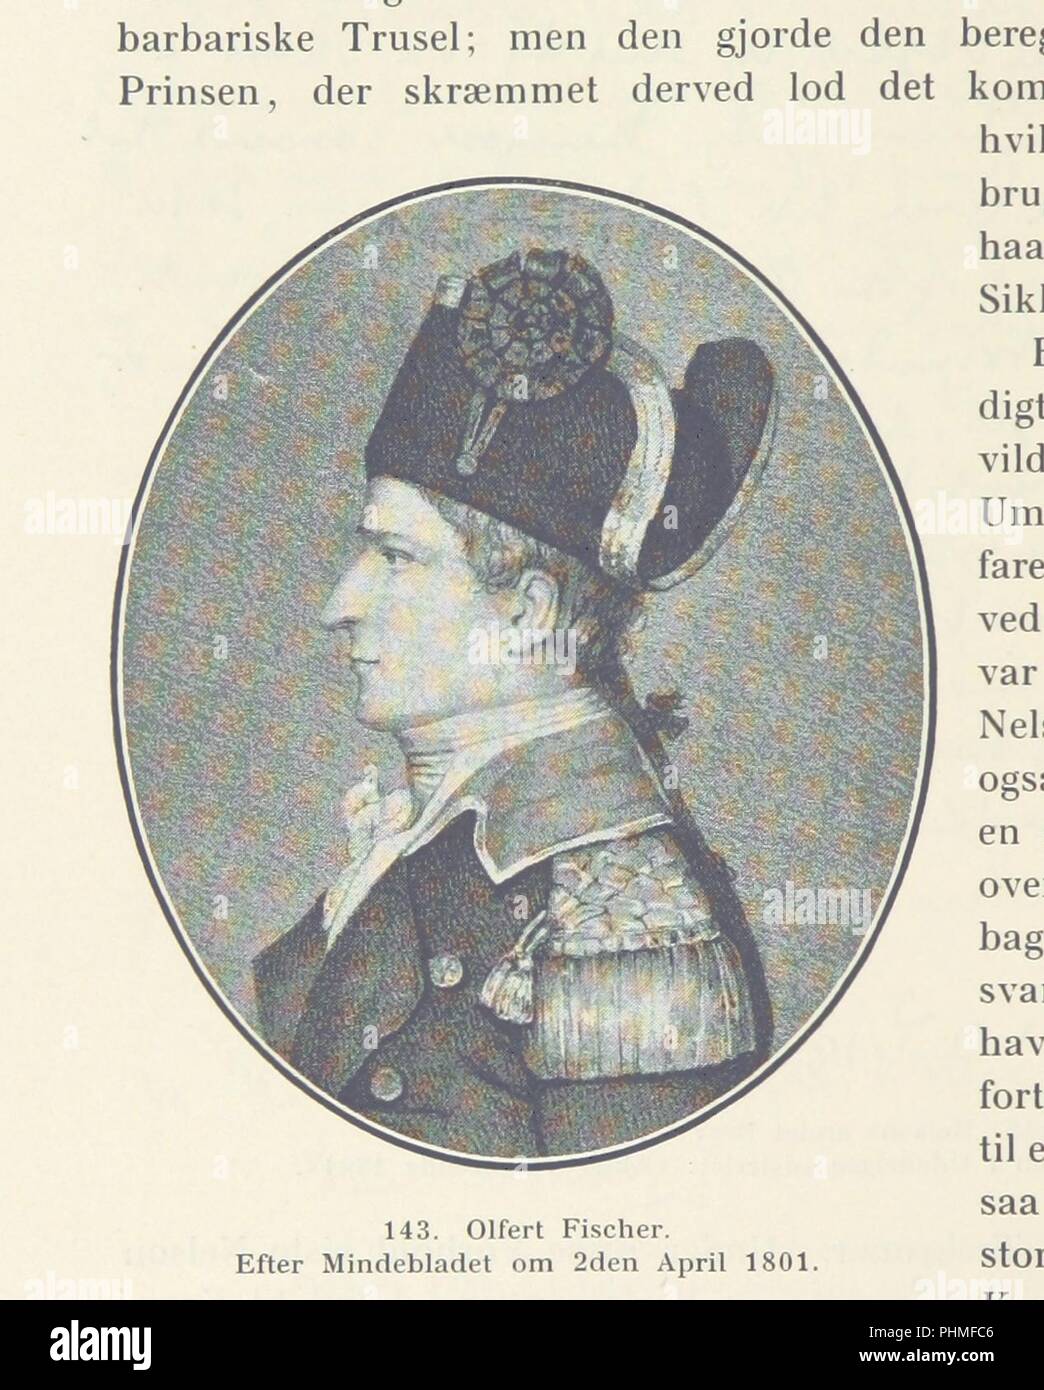 Image  from page 558 of 'Danmarks Riges Historie af J. Steenstrup, Kr. Erslev, A. Heise, V. Mollerup, J. A. Fridericia, E. Holm, A. D. Jørgensen. Historisk illustreret' . Stock Photo